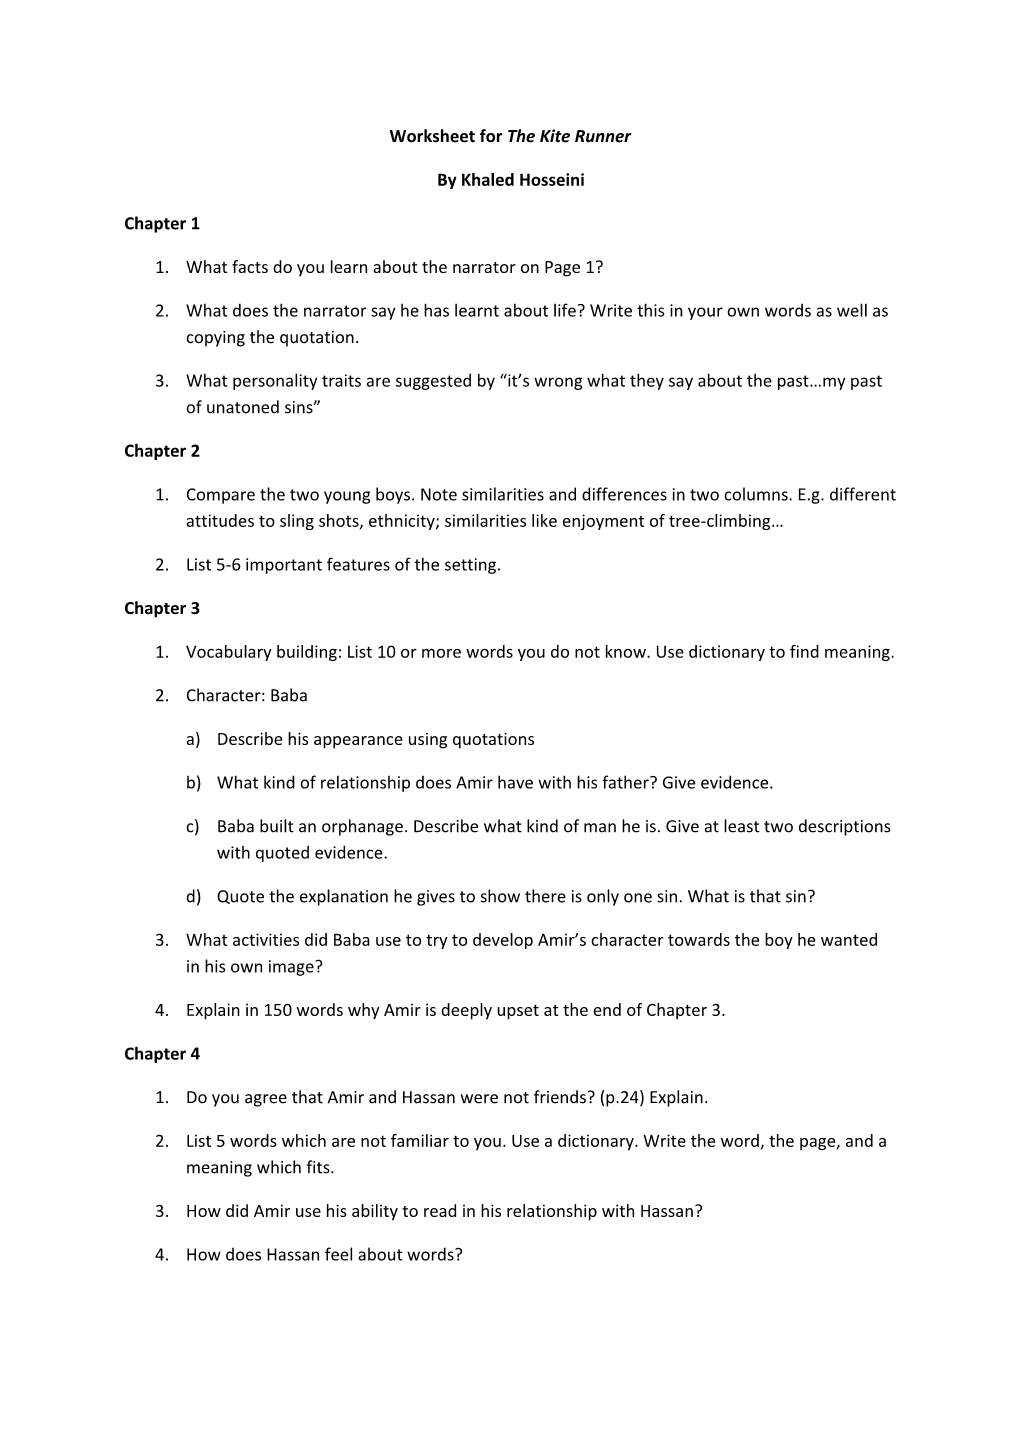 Worksheet for the Kite Runner